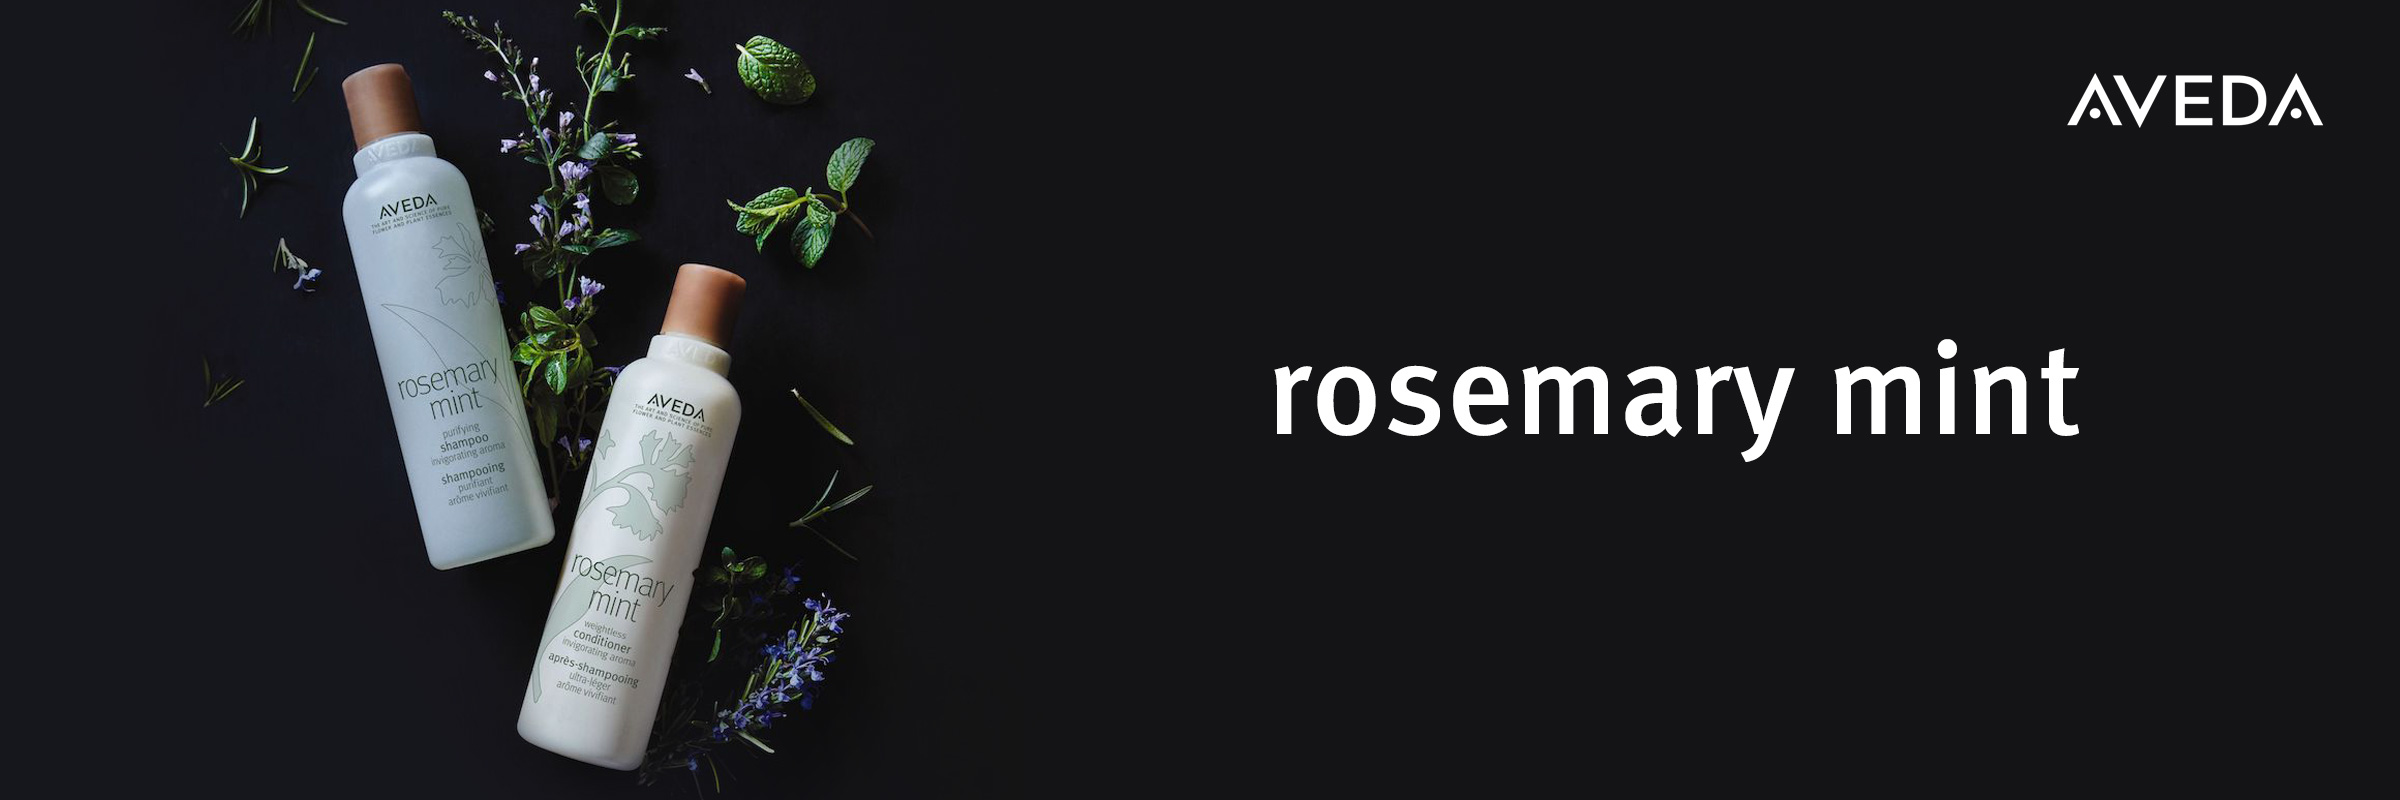 Aveda Rosemary Mint